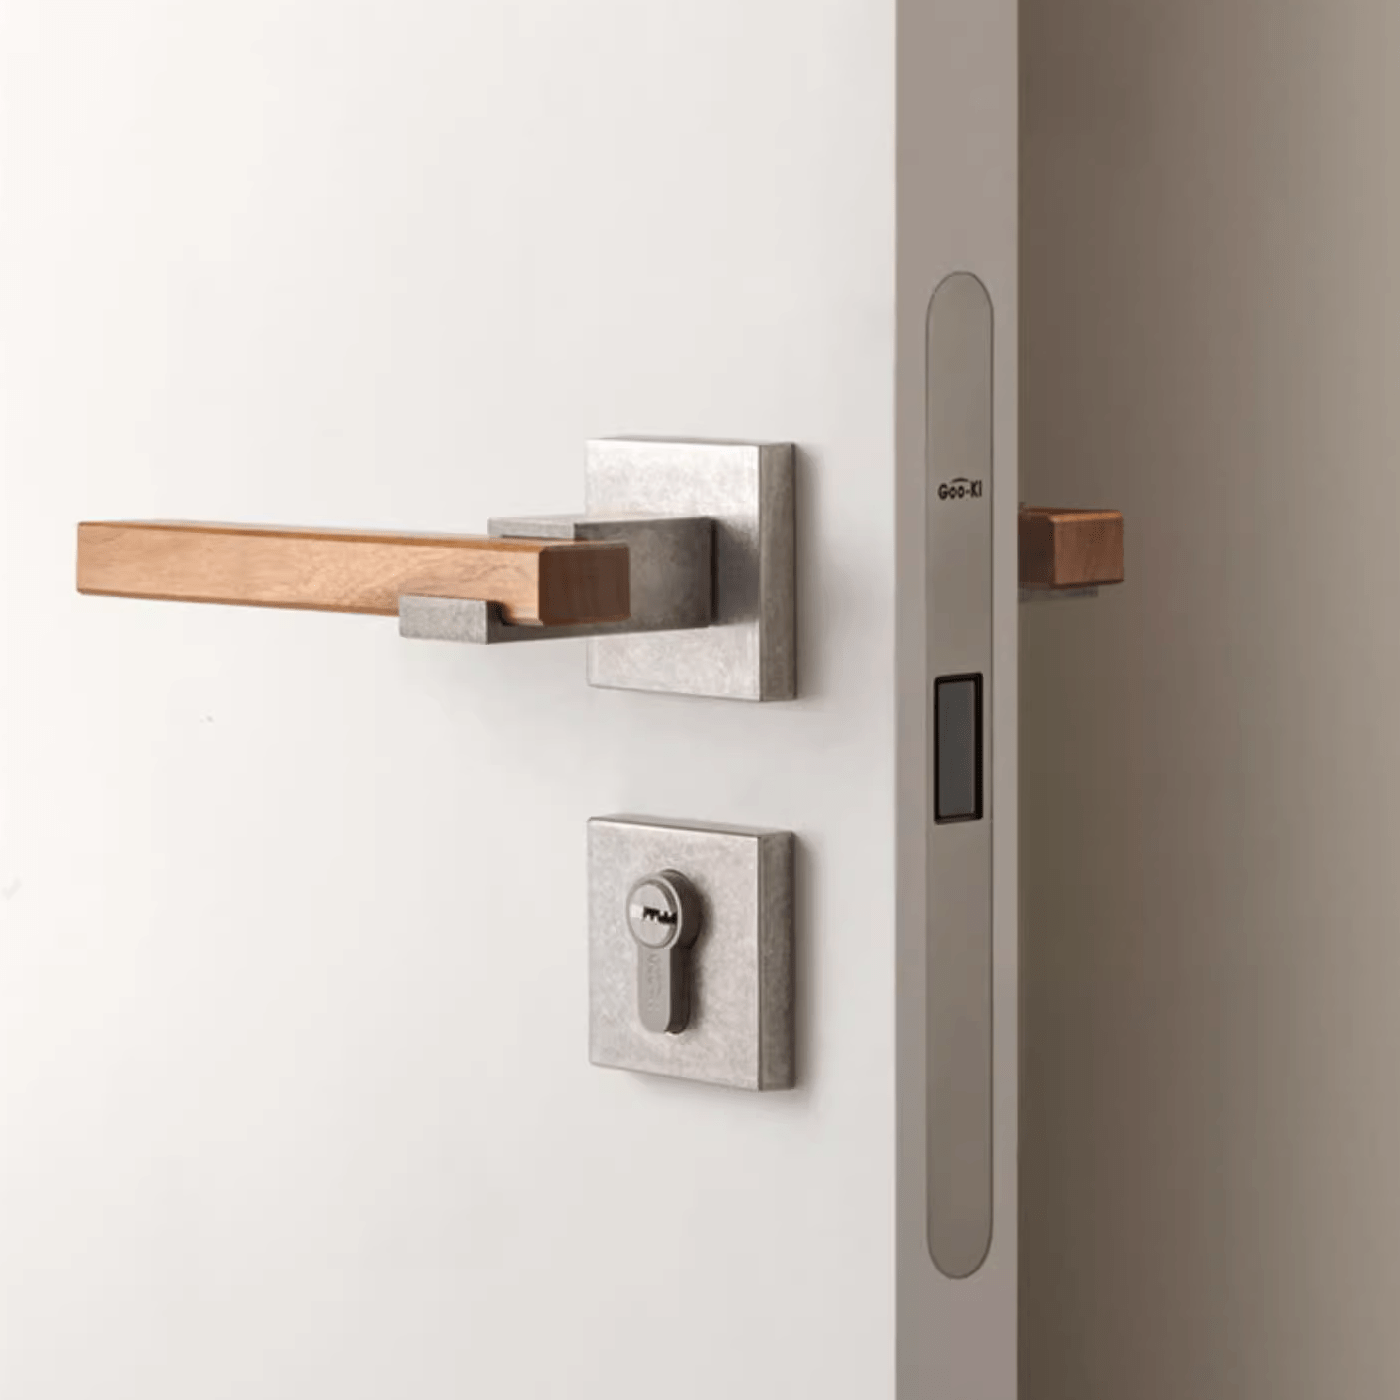 Goo-Ki North America Cherry Wood Door Handle Set for Bedroom Household Antique Silver Door Lock